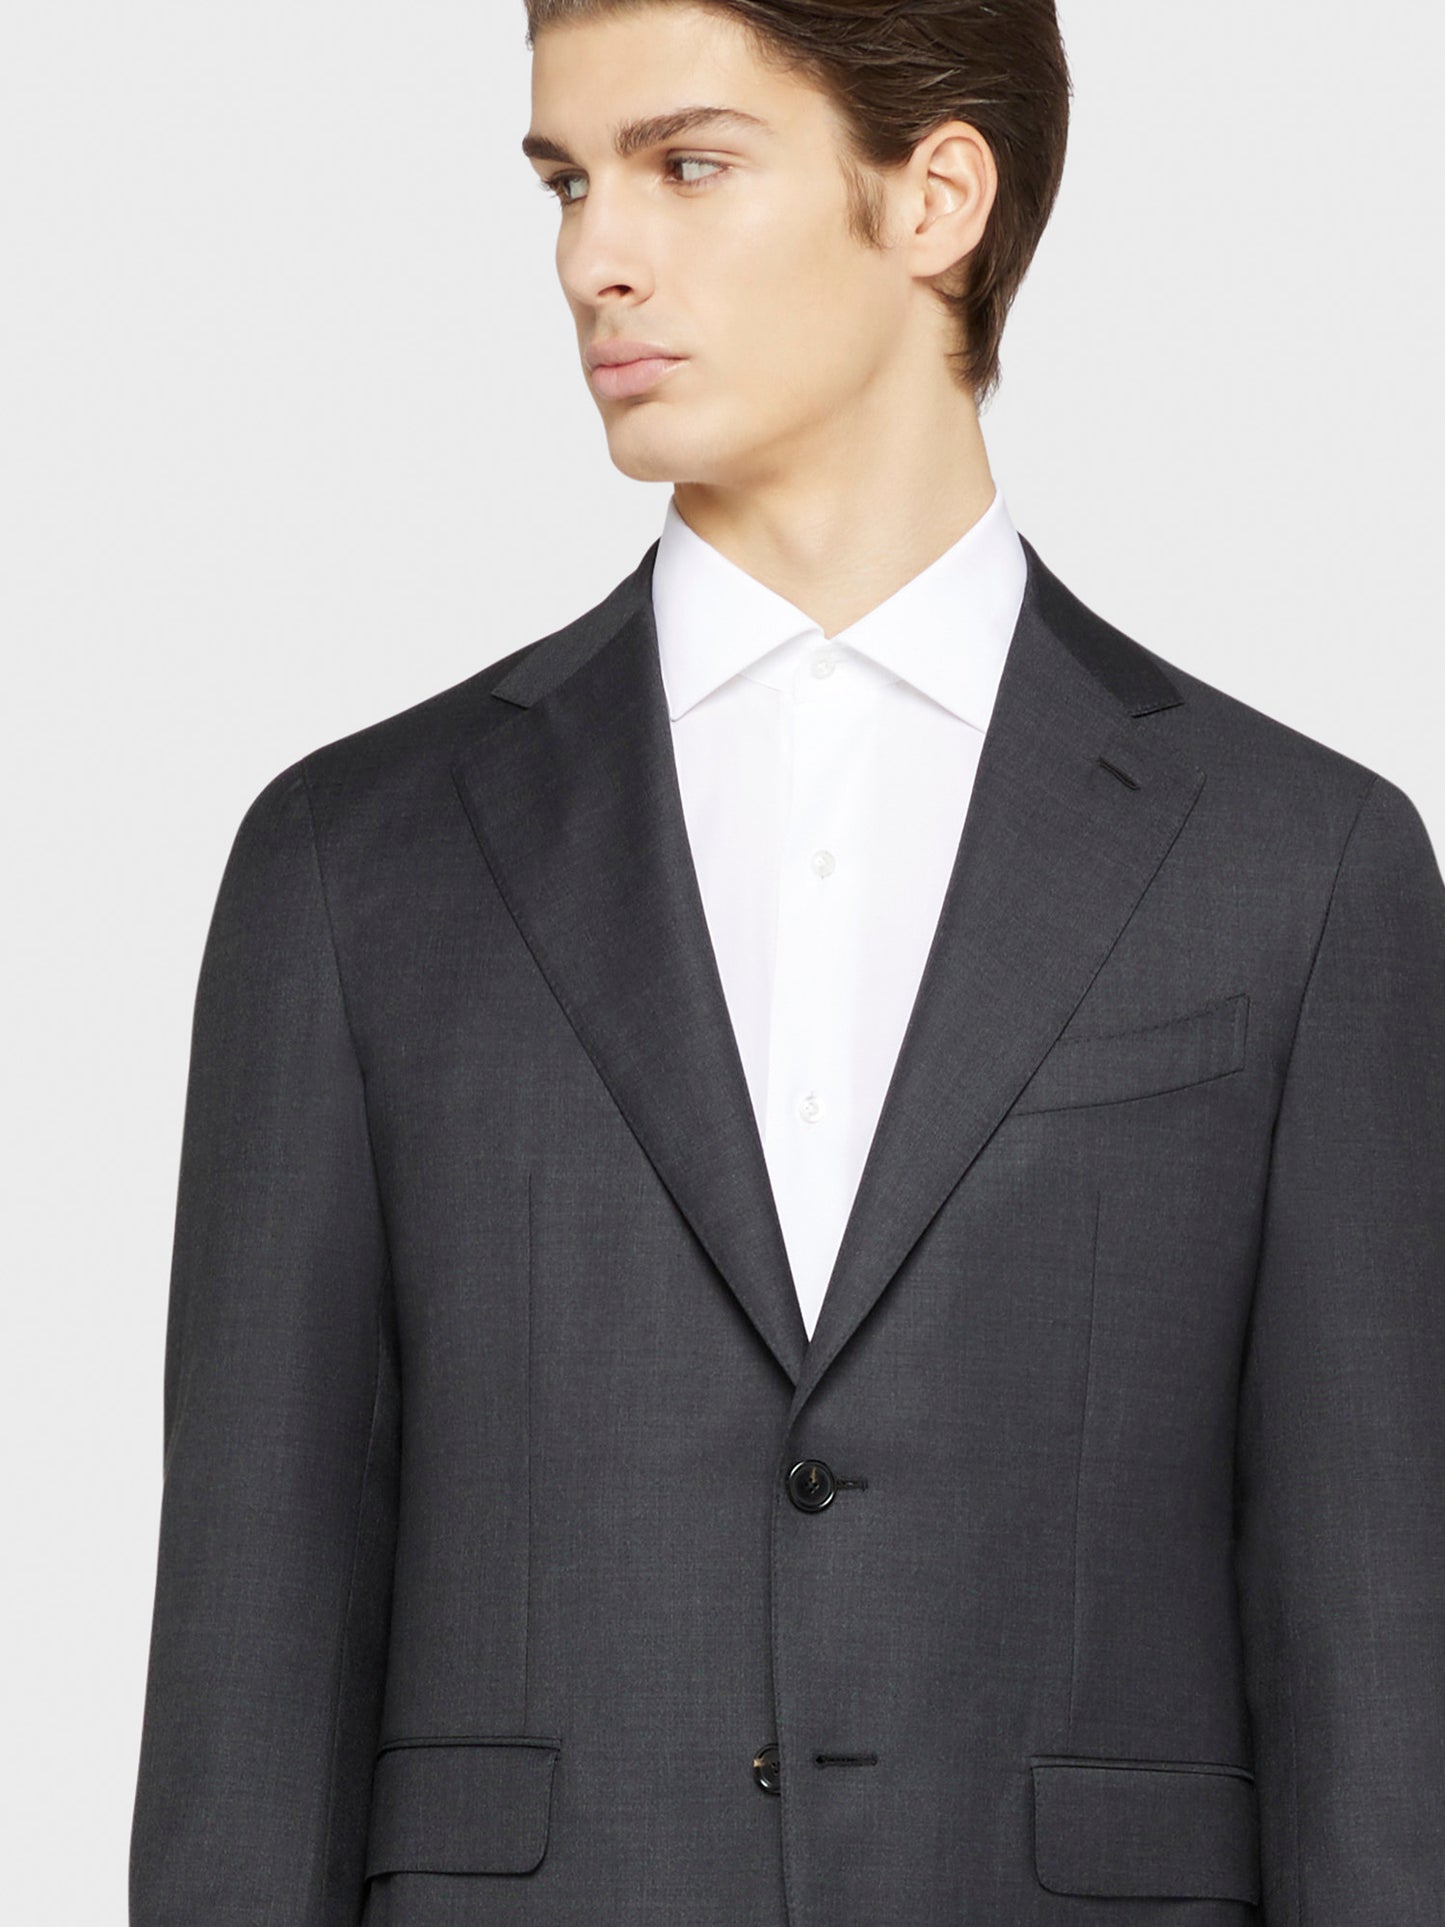 Caruso Menswear Abbigliamento Uomo Abito Aida monopetto di lana 130's grigio drop 7R dettaglio giacca